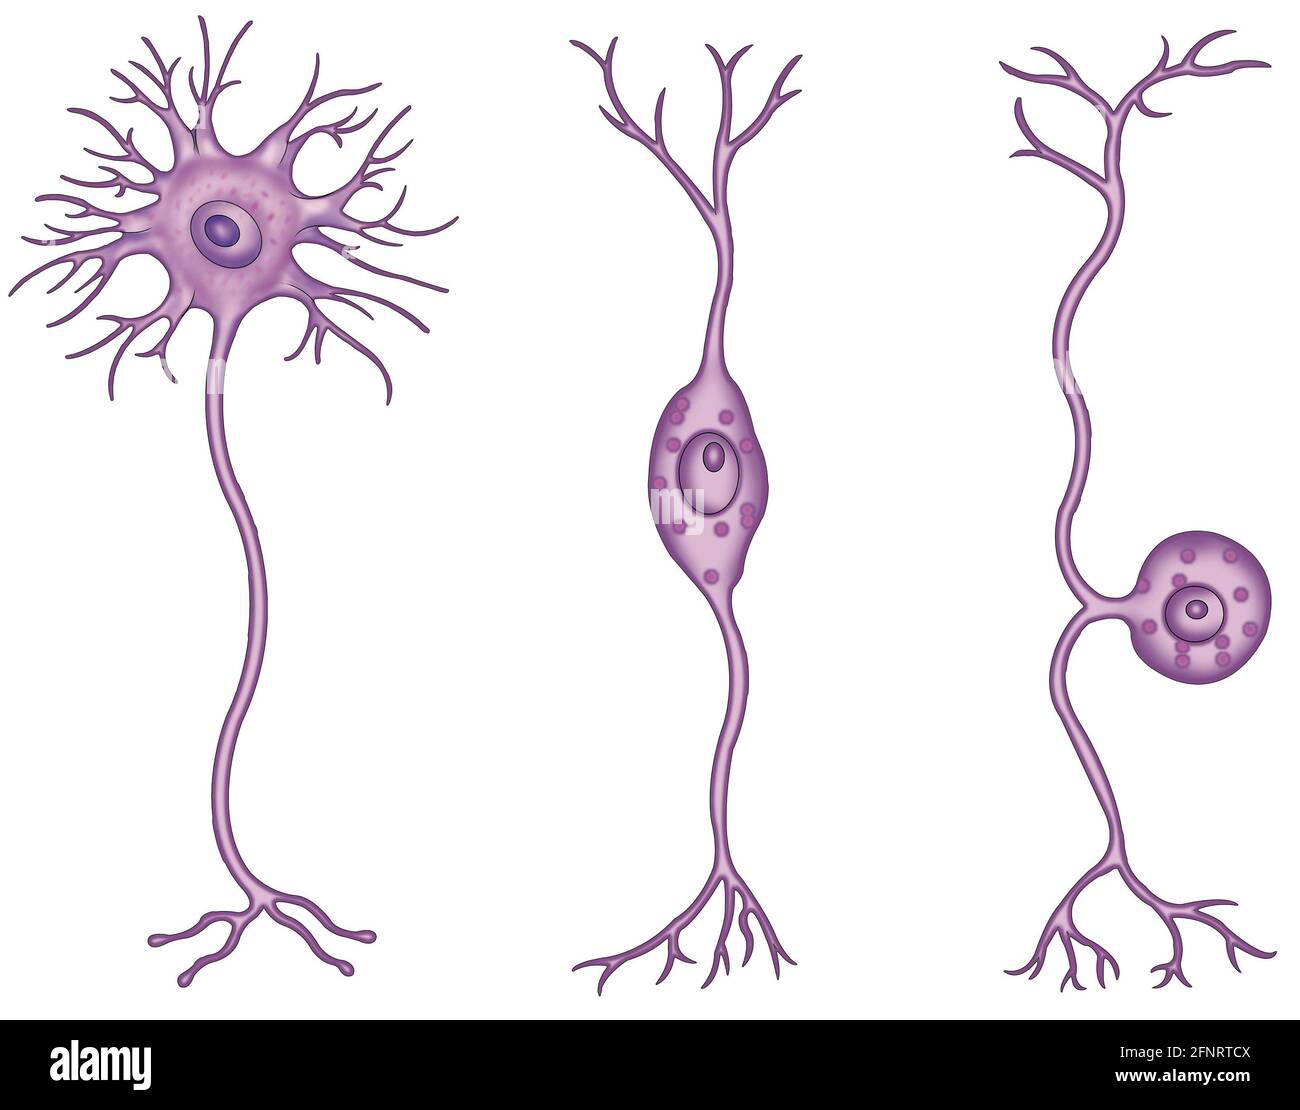 Neuronen sind spezialisierte Zellen im zentralen Nervensystem. Sie werden nach Struktur, Form und Funktion klassifiziert. Stockfoto